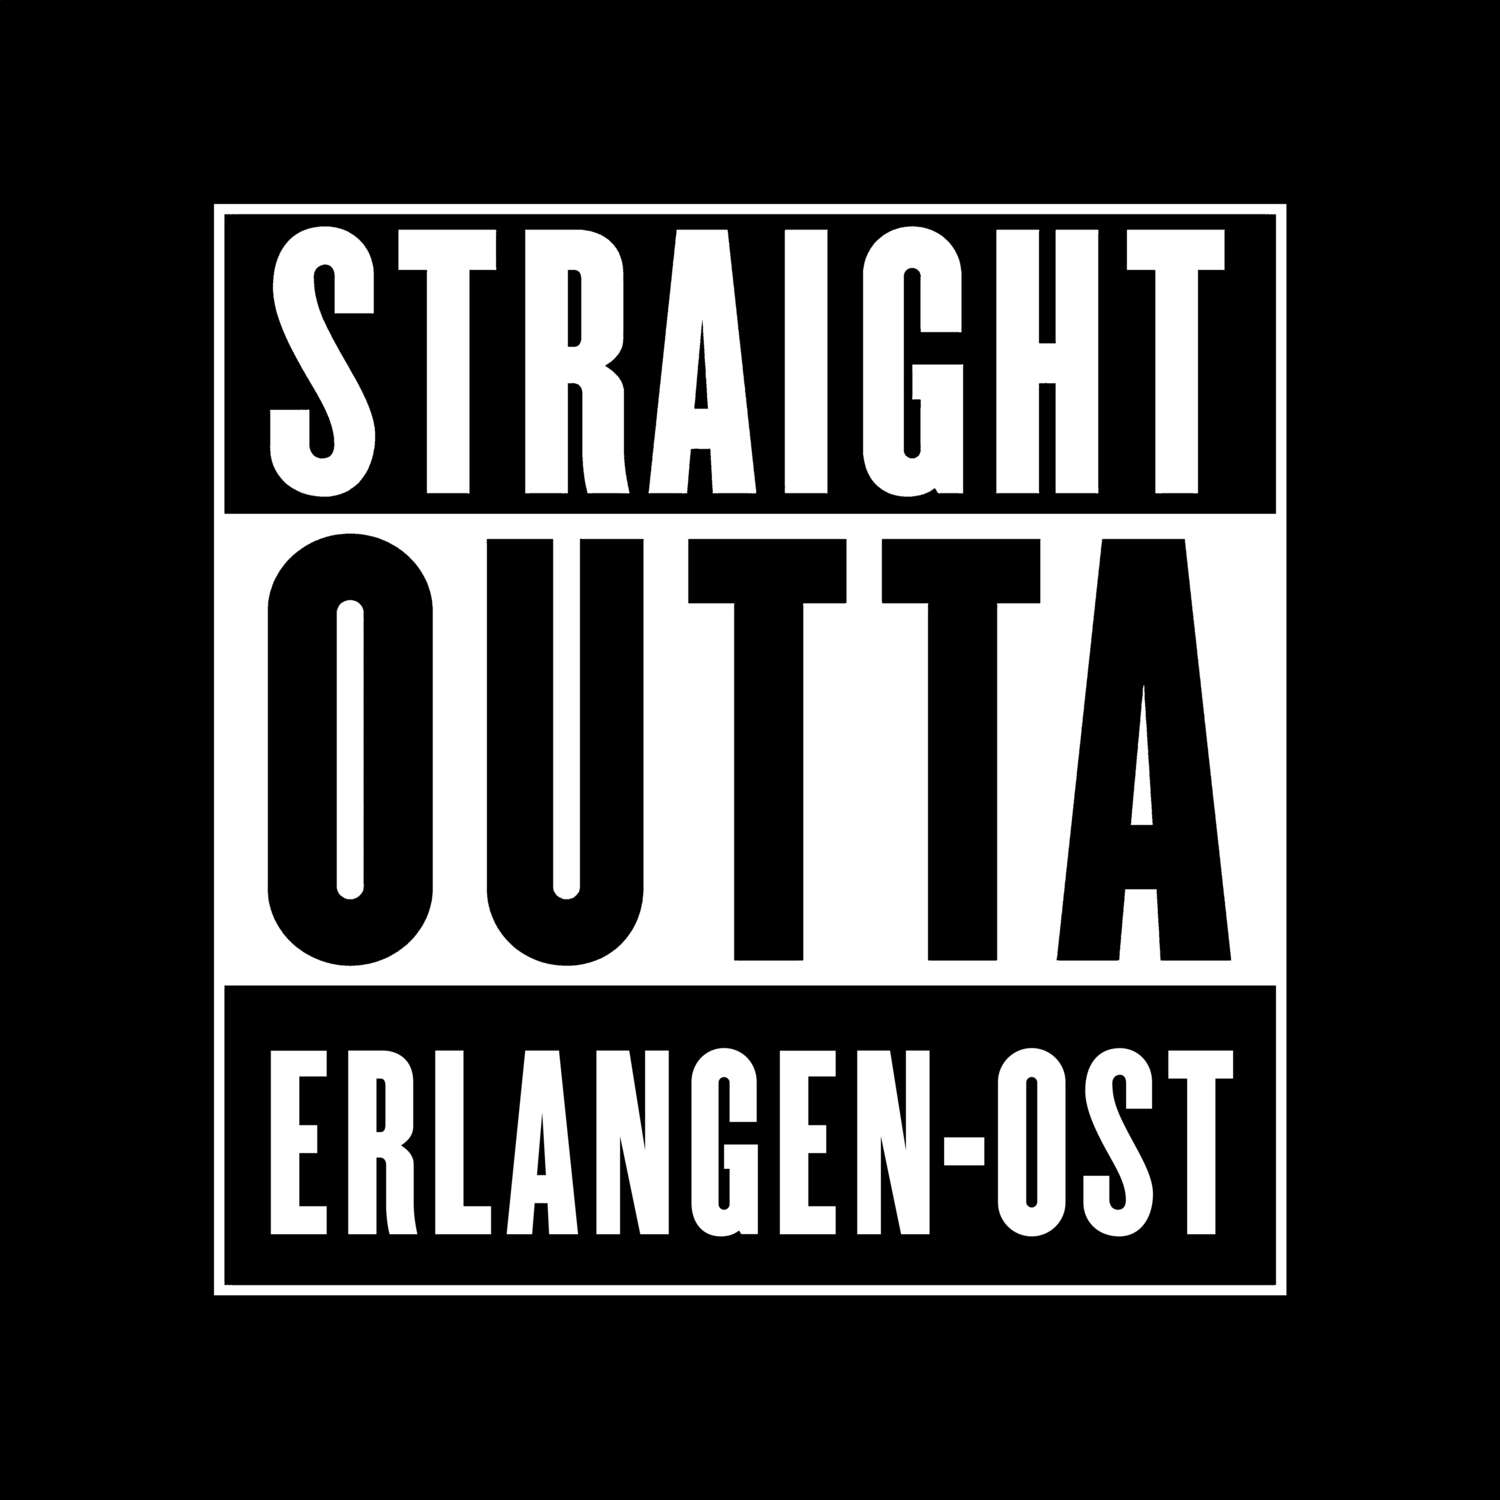 Erlangen-Ost T-Shirt »Straight Outta«